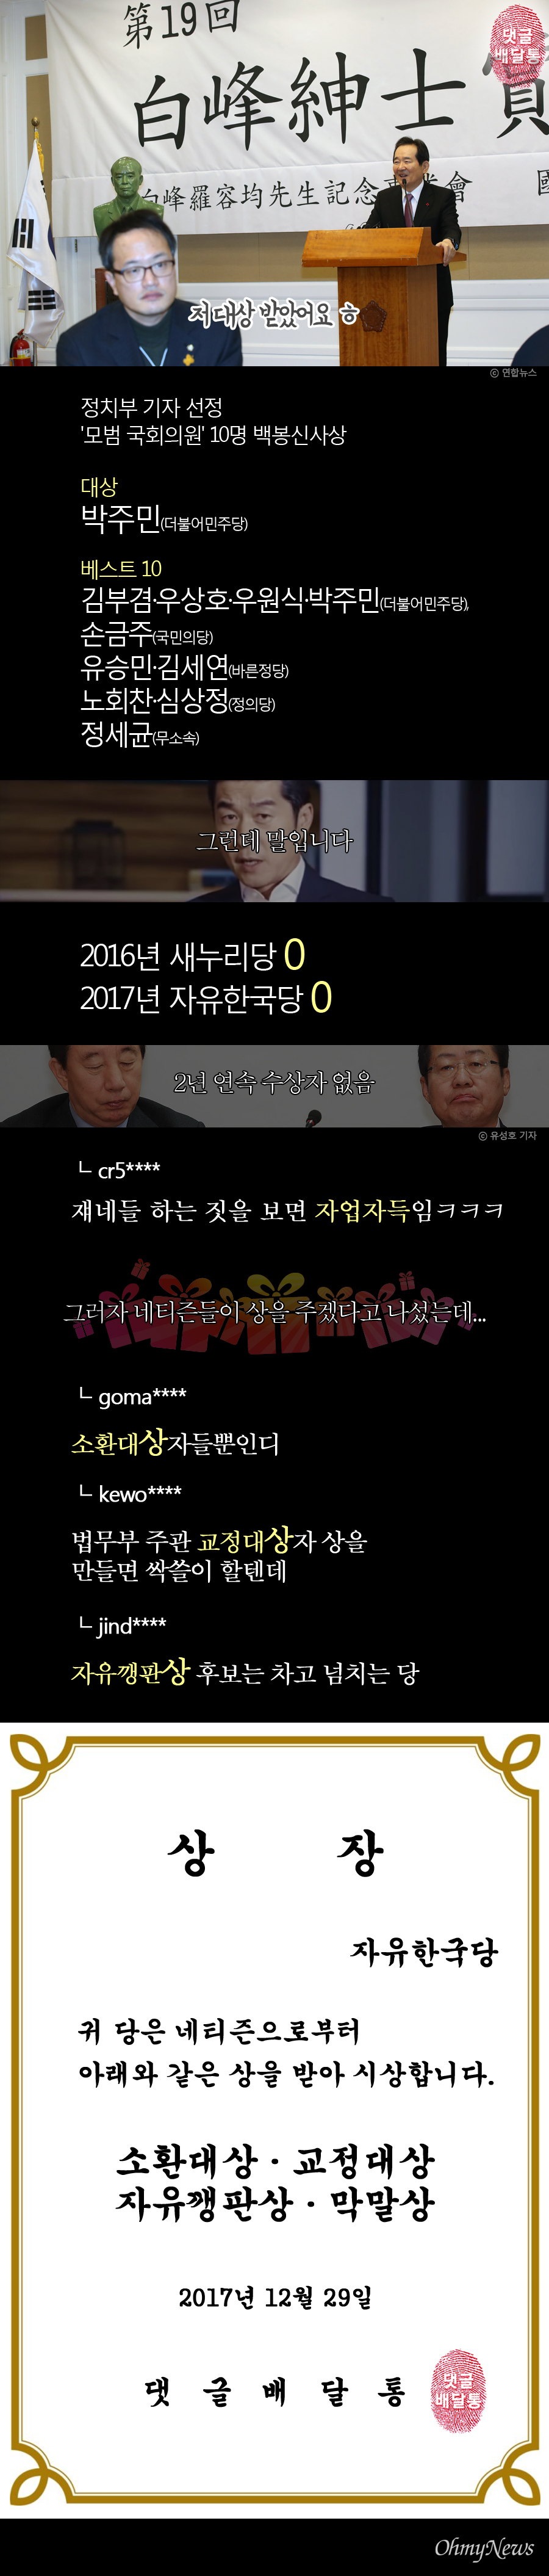 2017년 12월 29일 '댓글배달통' <한국당, '네티즌 상' 4관왕? "후보 차고 넘쳐"> 기사.